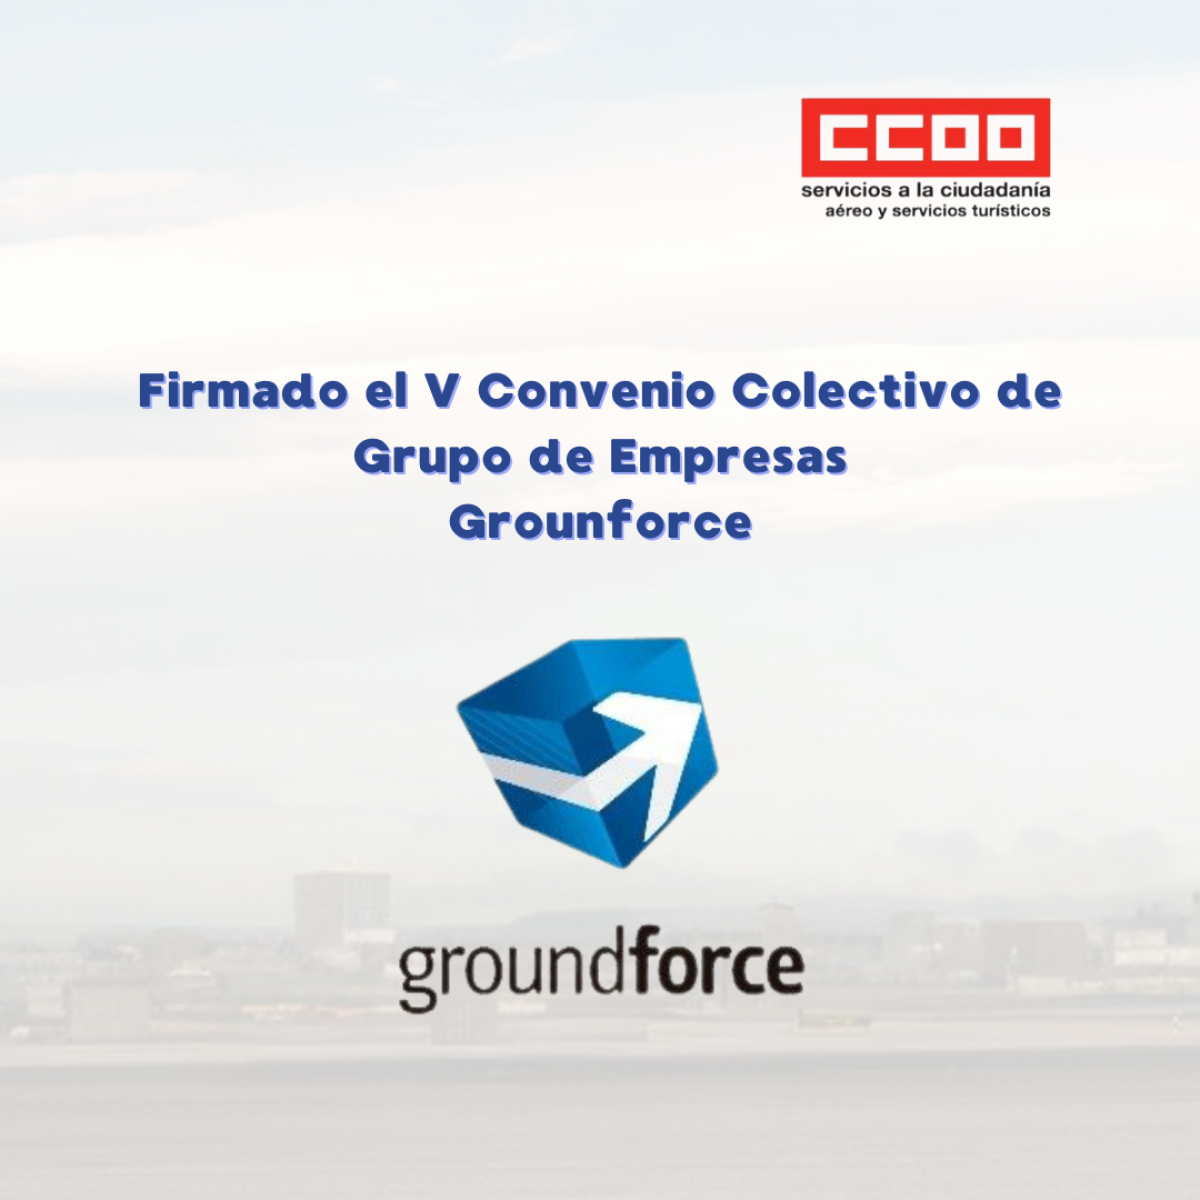 Firmado el V Convenio Colectivo del Grupo de Empresas Groundforce